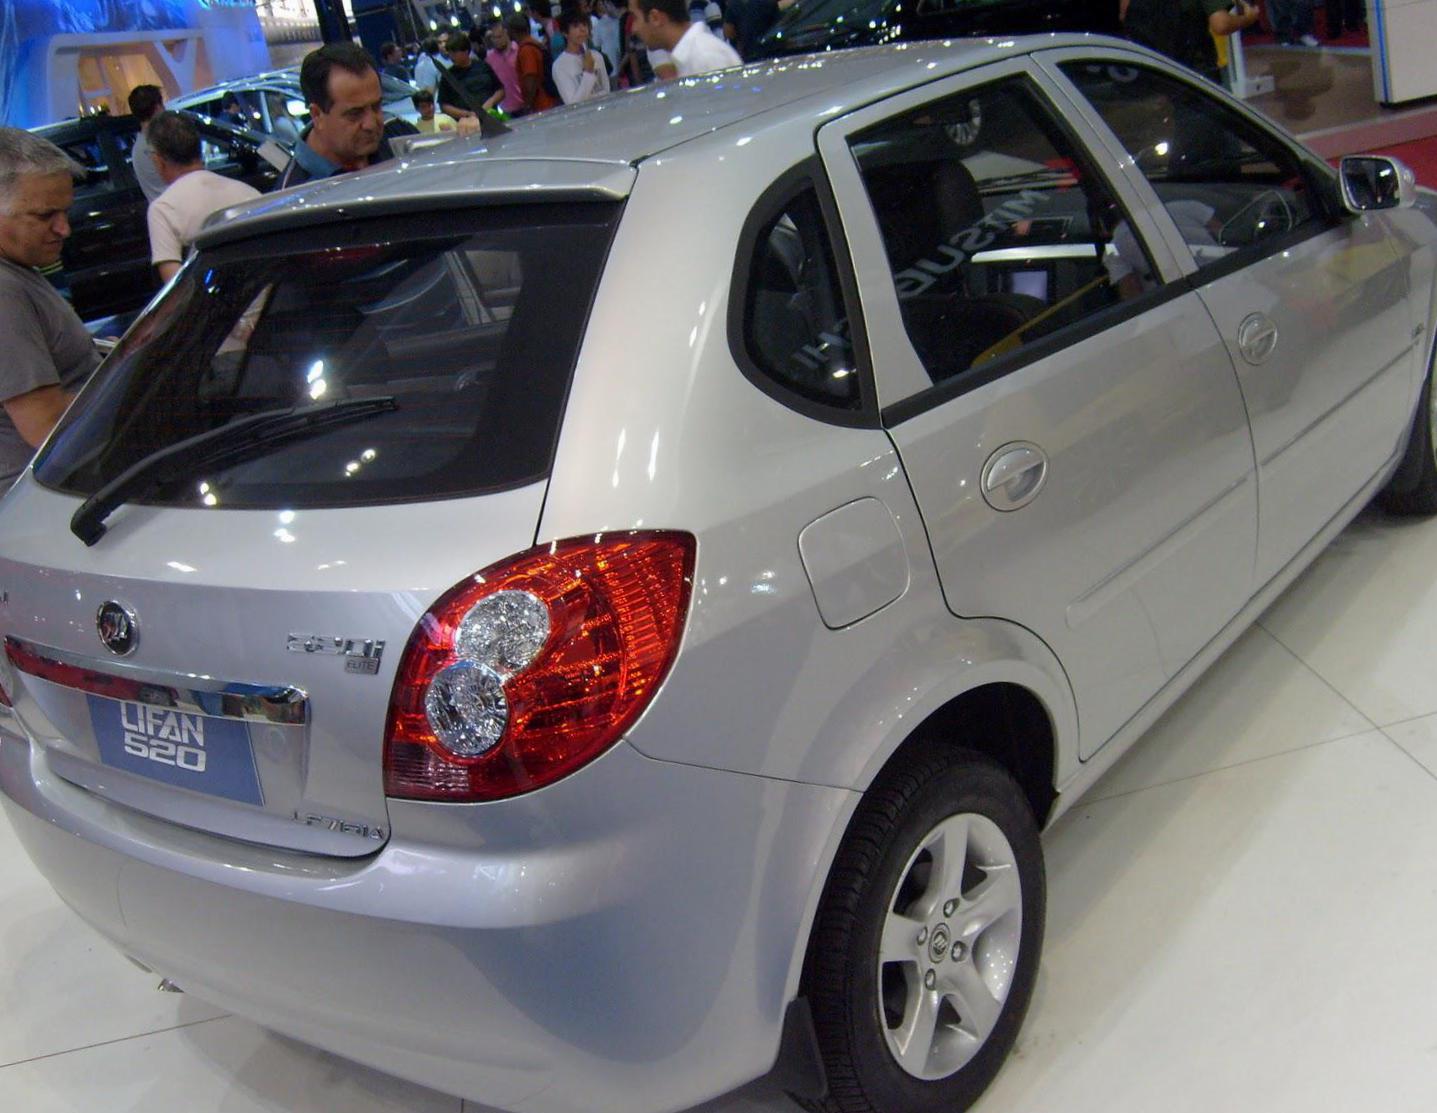 520 Lifan model 2013